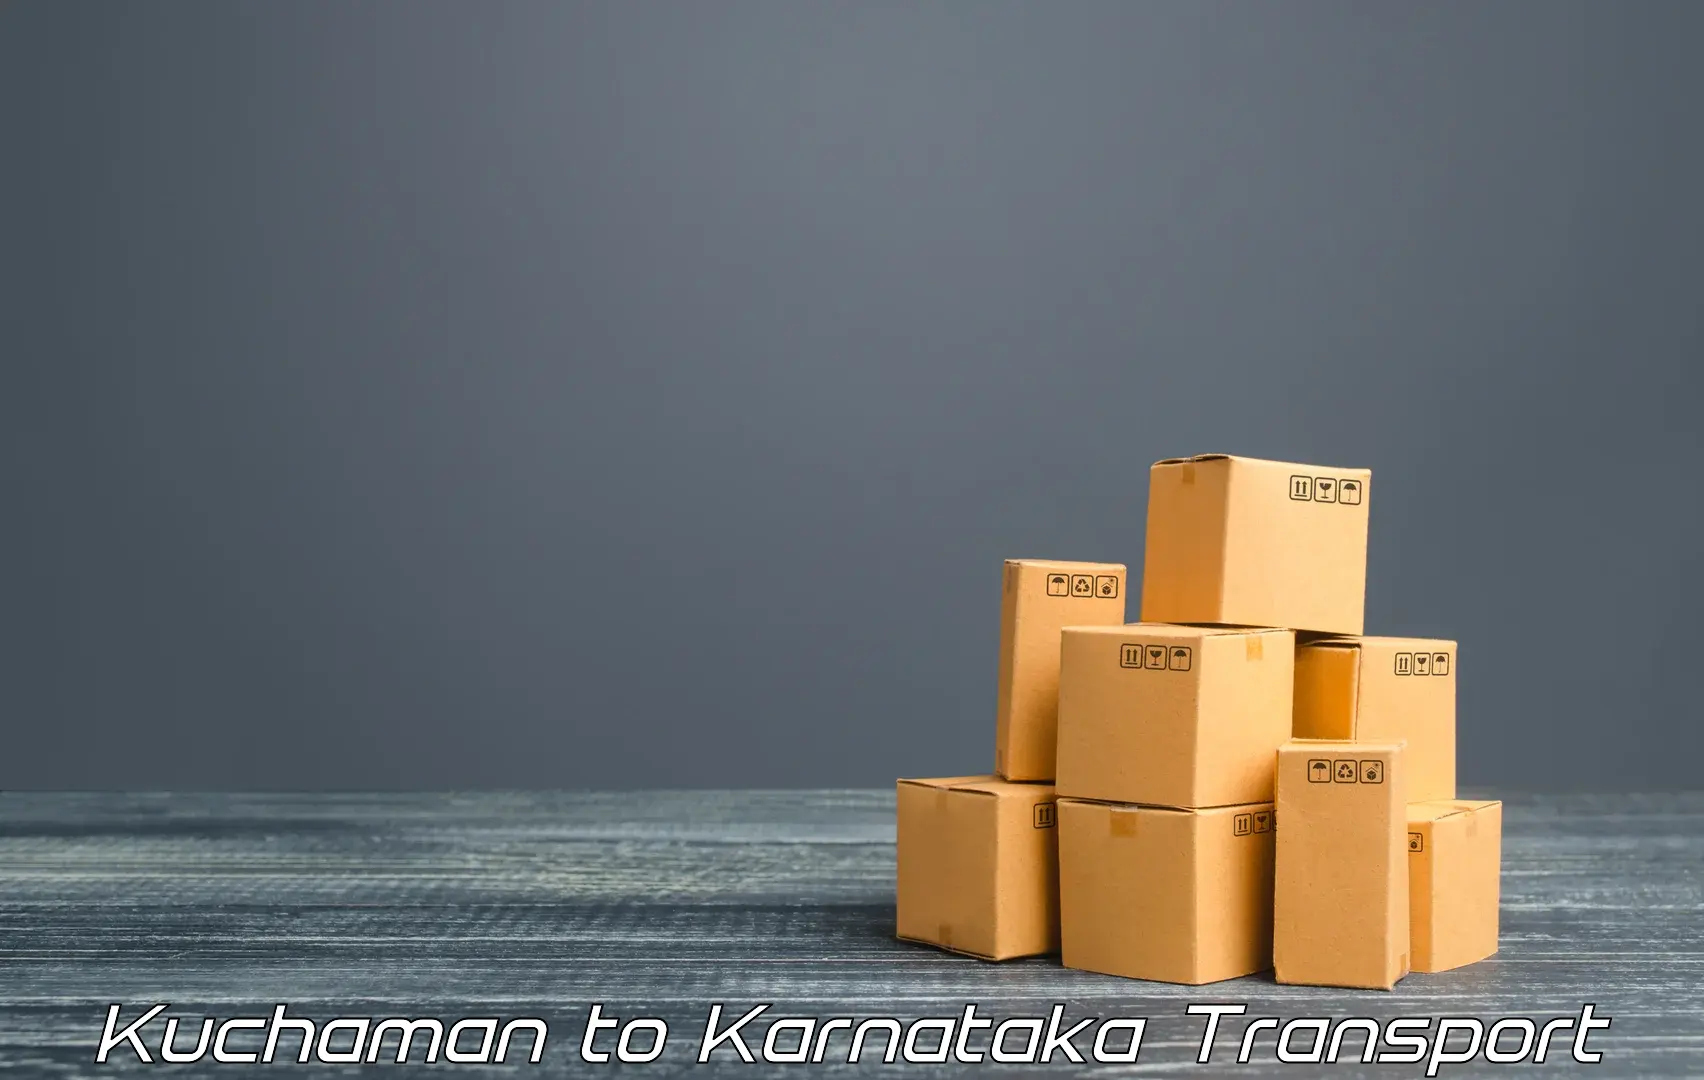 Cargo transportation services Kuchaman to Kudligi